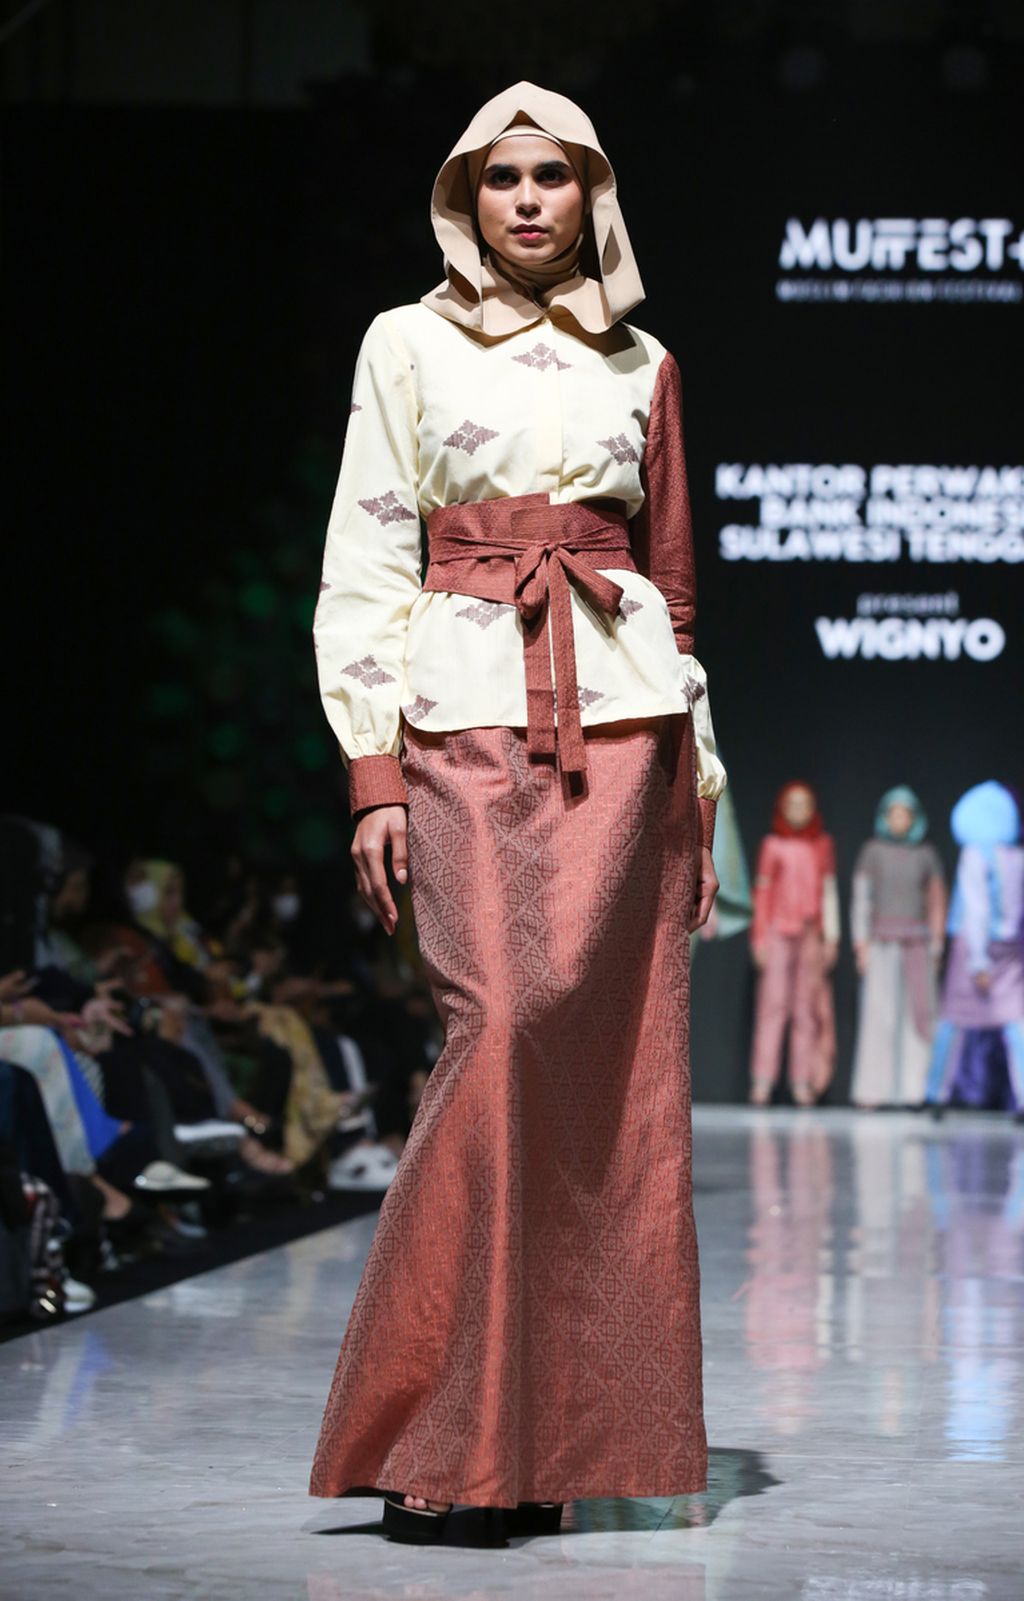 Karya perancang Wignyo di ajang Muslim Fashion Festival atau Muffest 2023, di Jakarta, awal Maret 2023. 